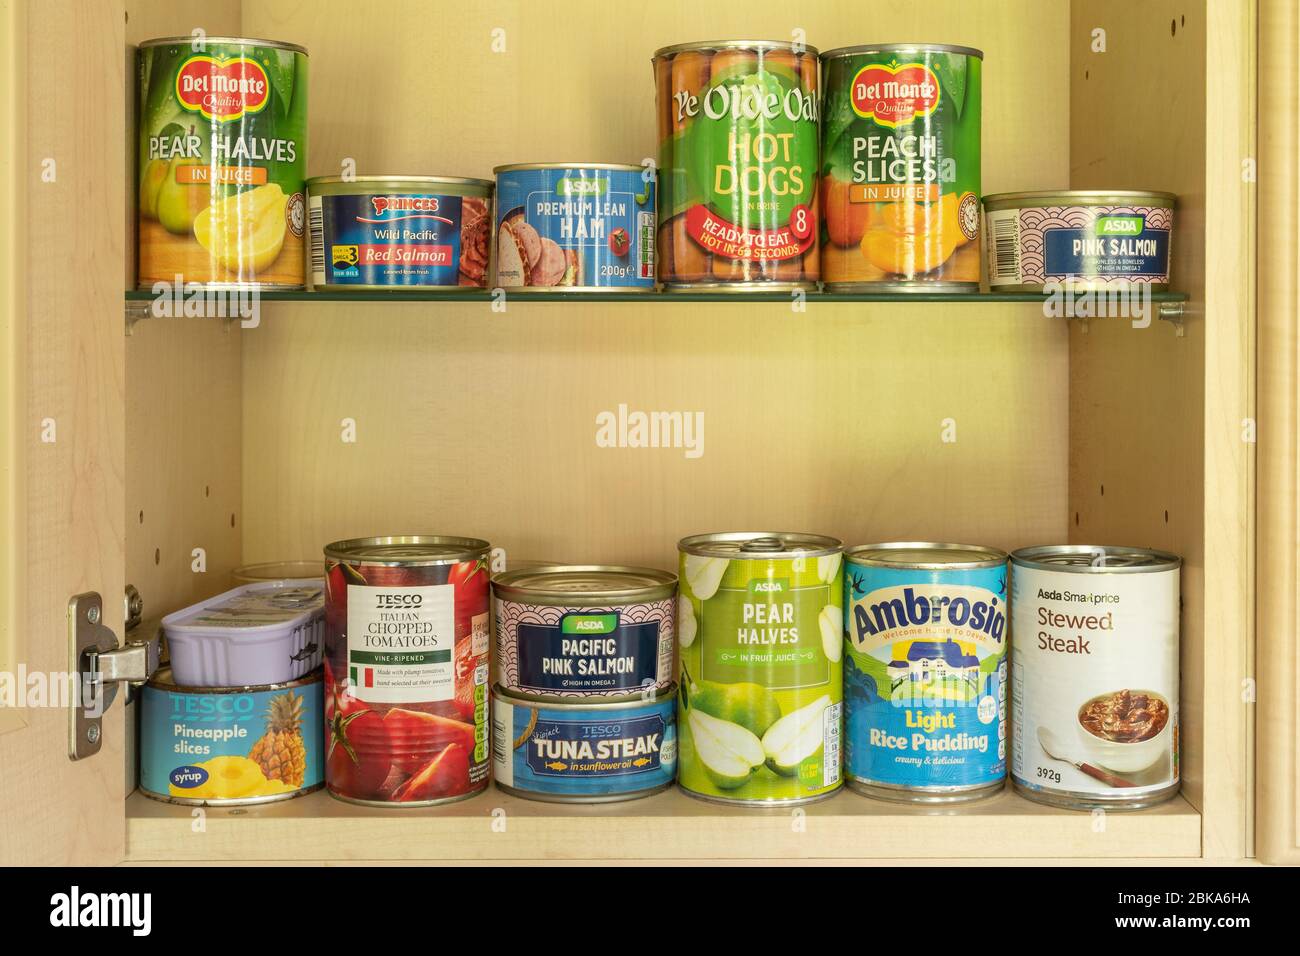 Conserves alimentaires (conserves alimentaires) dans une armoire de cuisine. Boîtes, boîtes. Banque D'Images